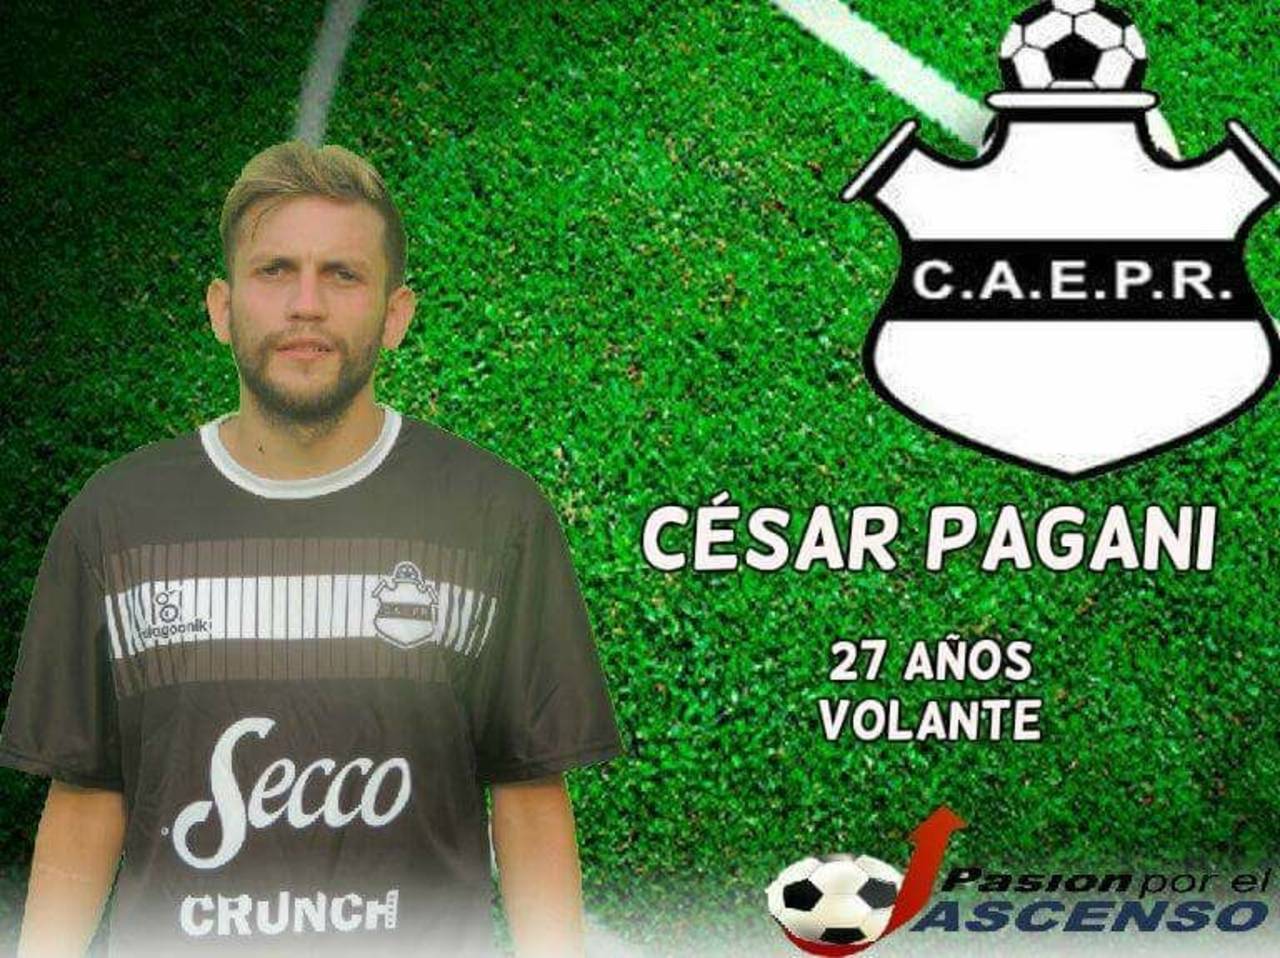 César Pagani amenazó al entrenador del club Escuela Presidente Roca, del torneo Federal C. 